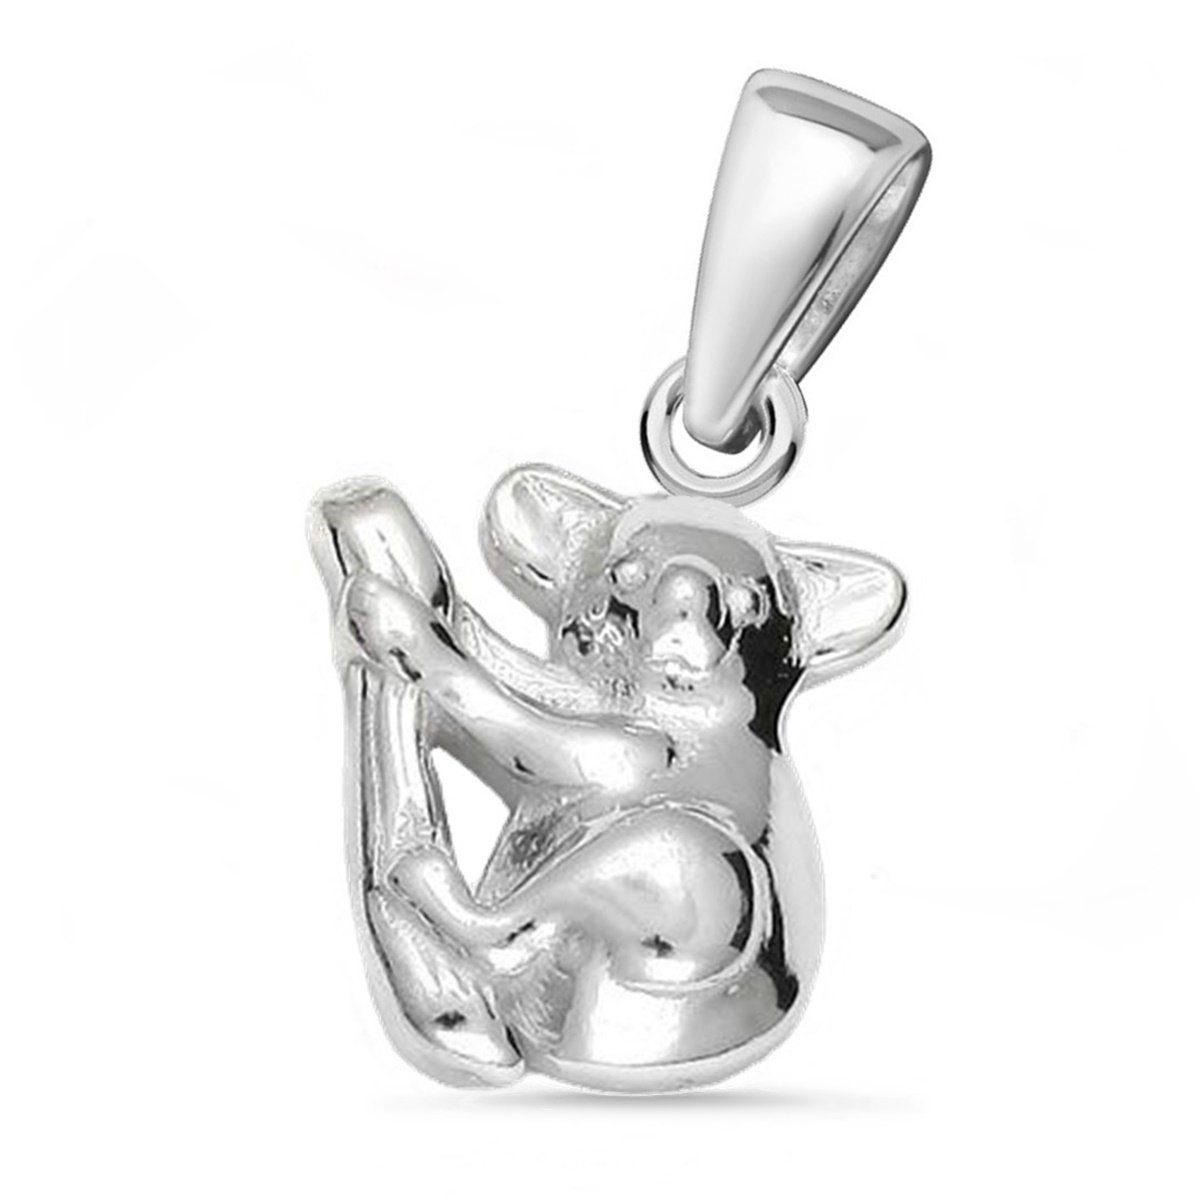 Goldene Hufeisen Kettenanhänger Koala Bär auf Ast Anhänger für Halskette  925 Silber Kettenanhänger (1 Stück, inkl. Etui)